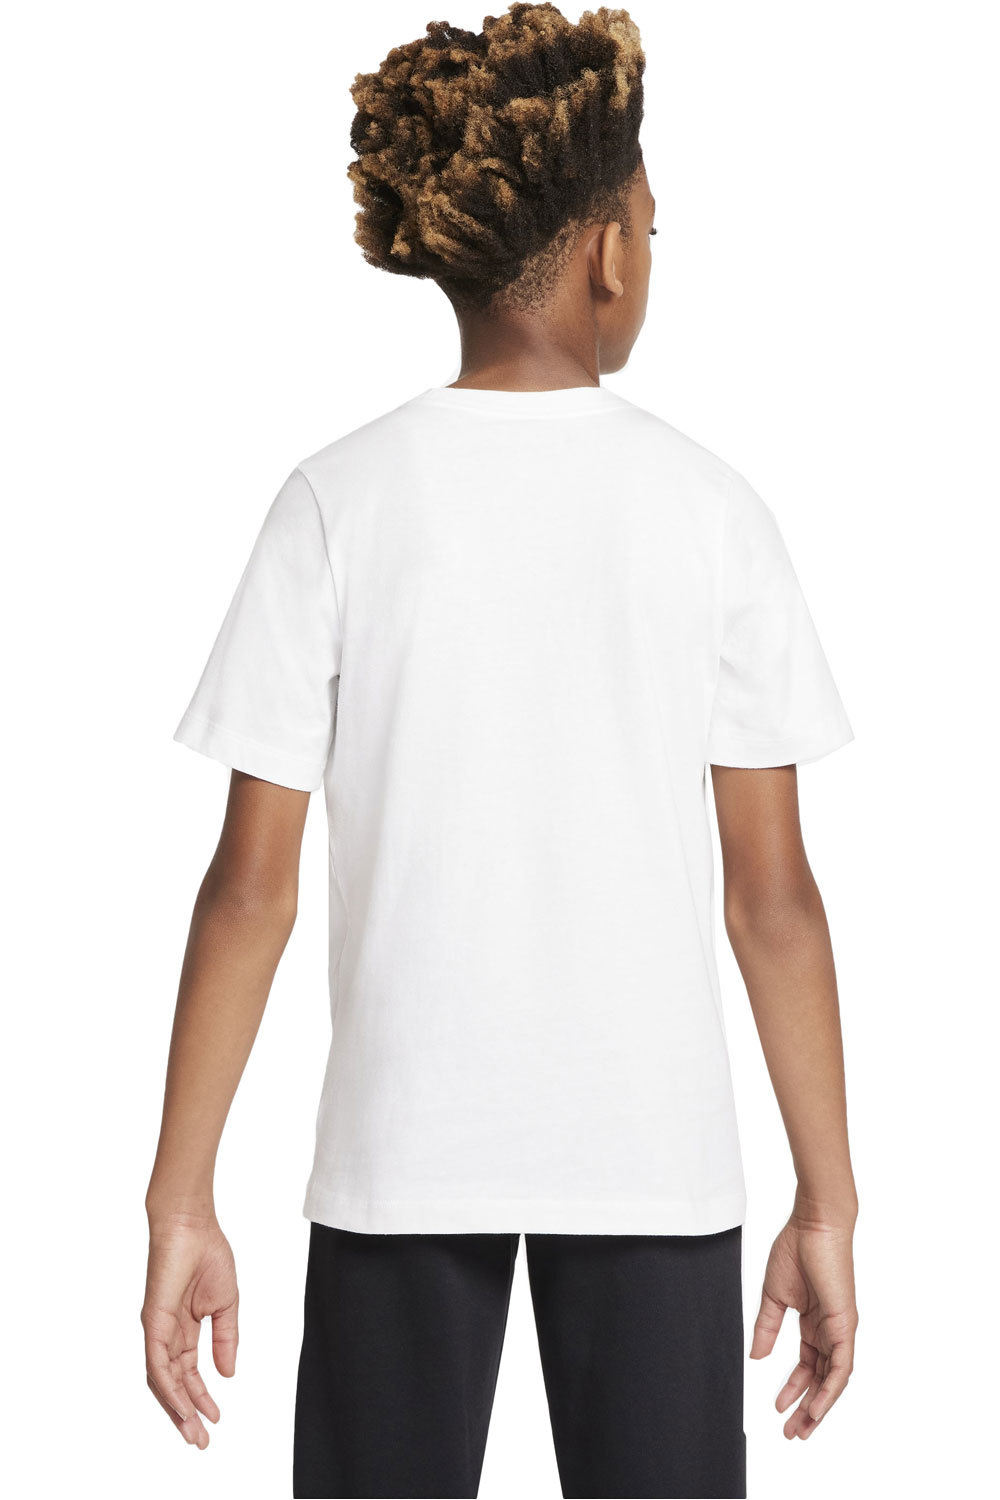 Nike camiseta manga corta niño X_B NSW TEE HBR CORE vista trasera